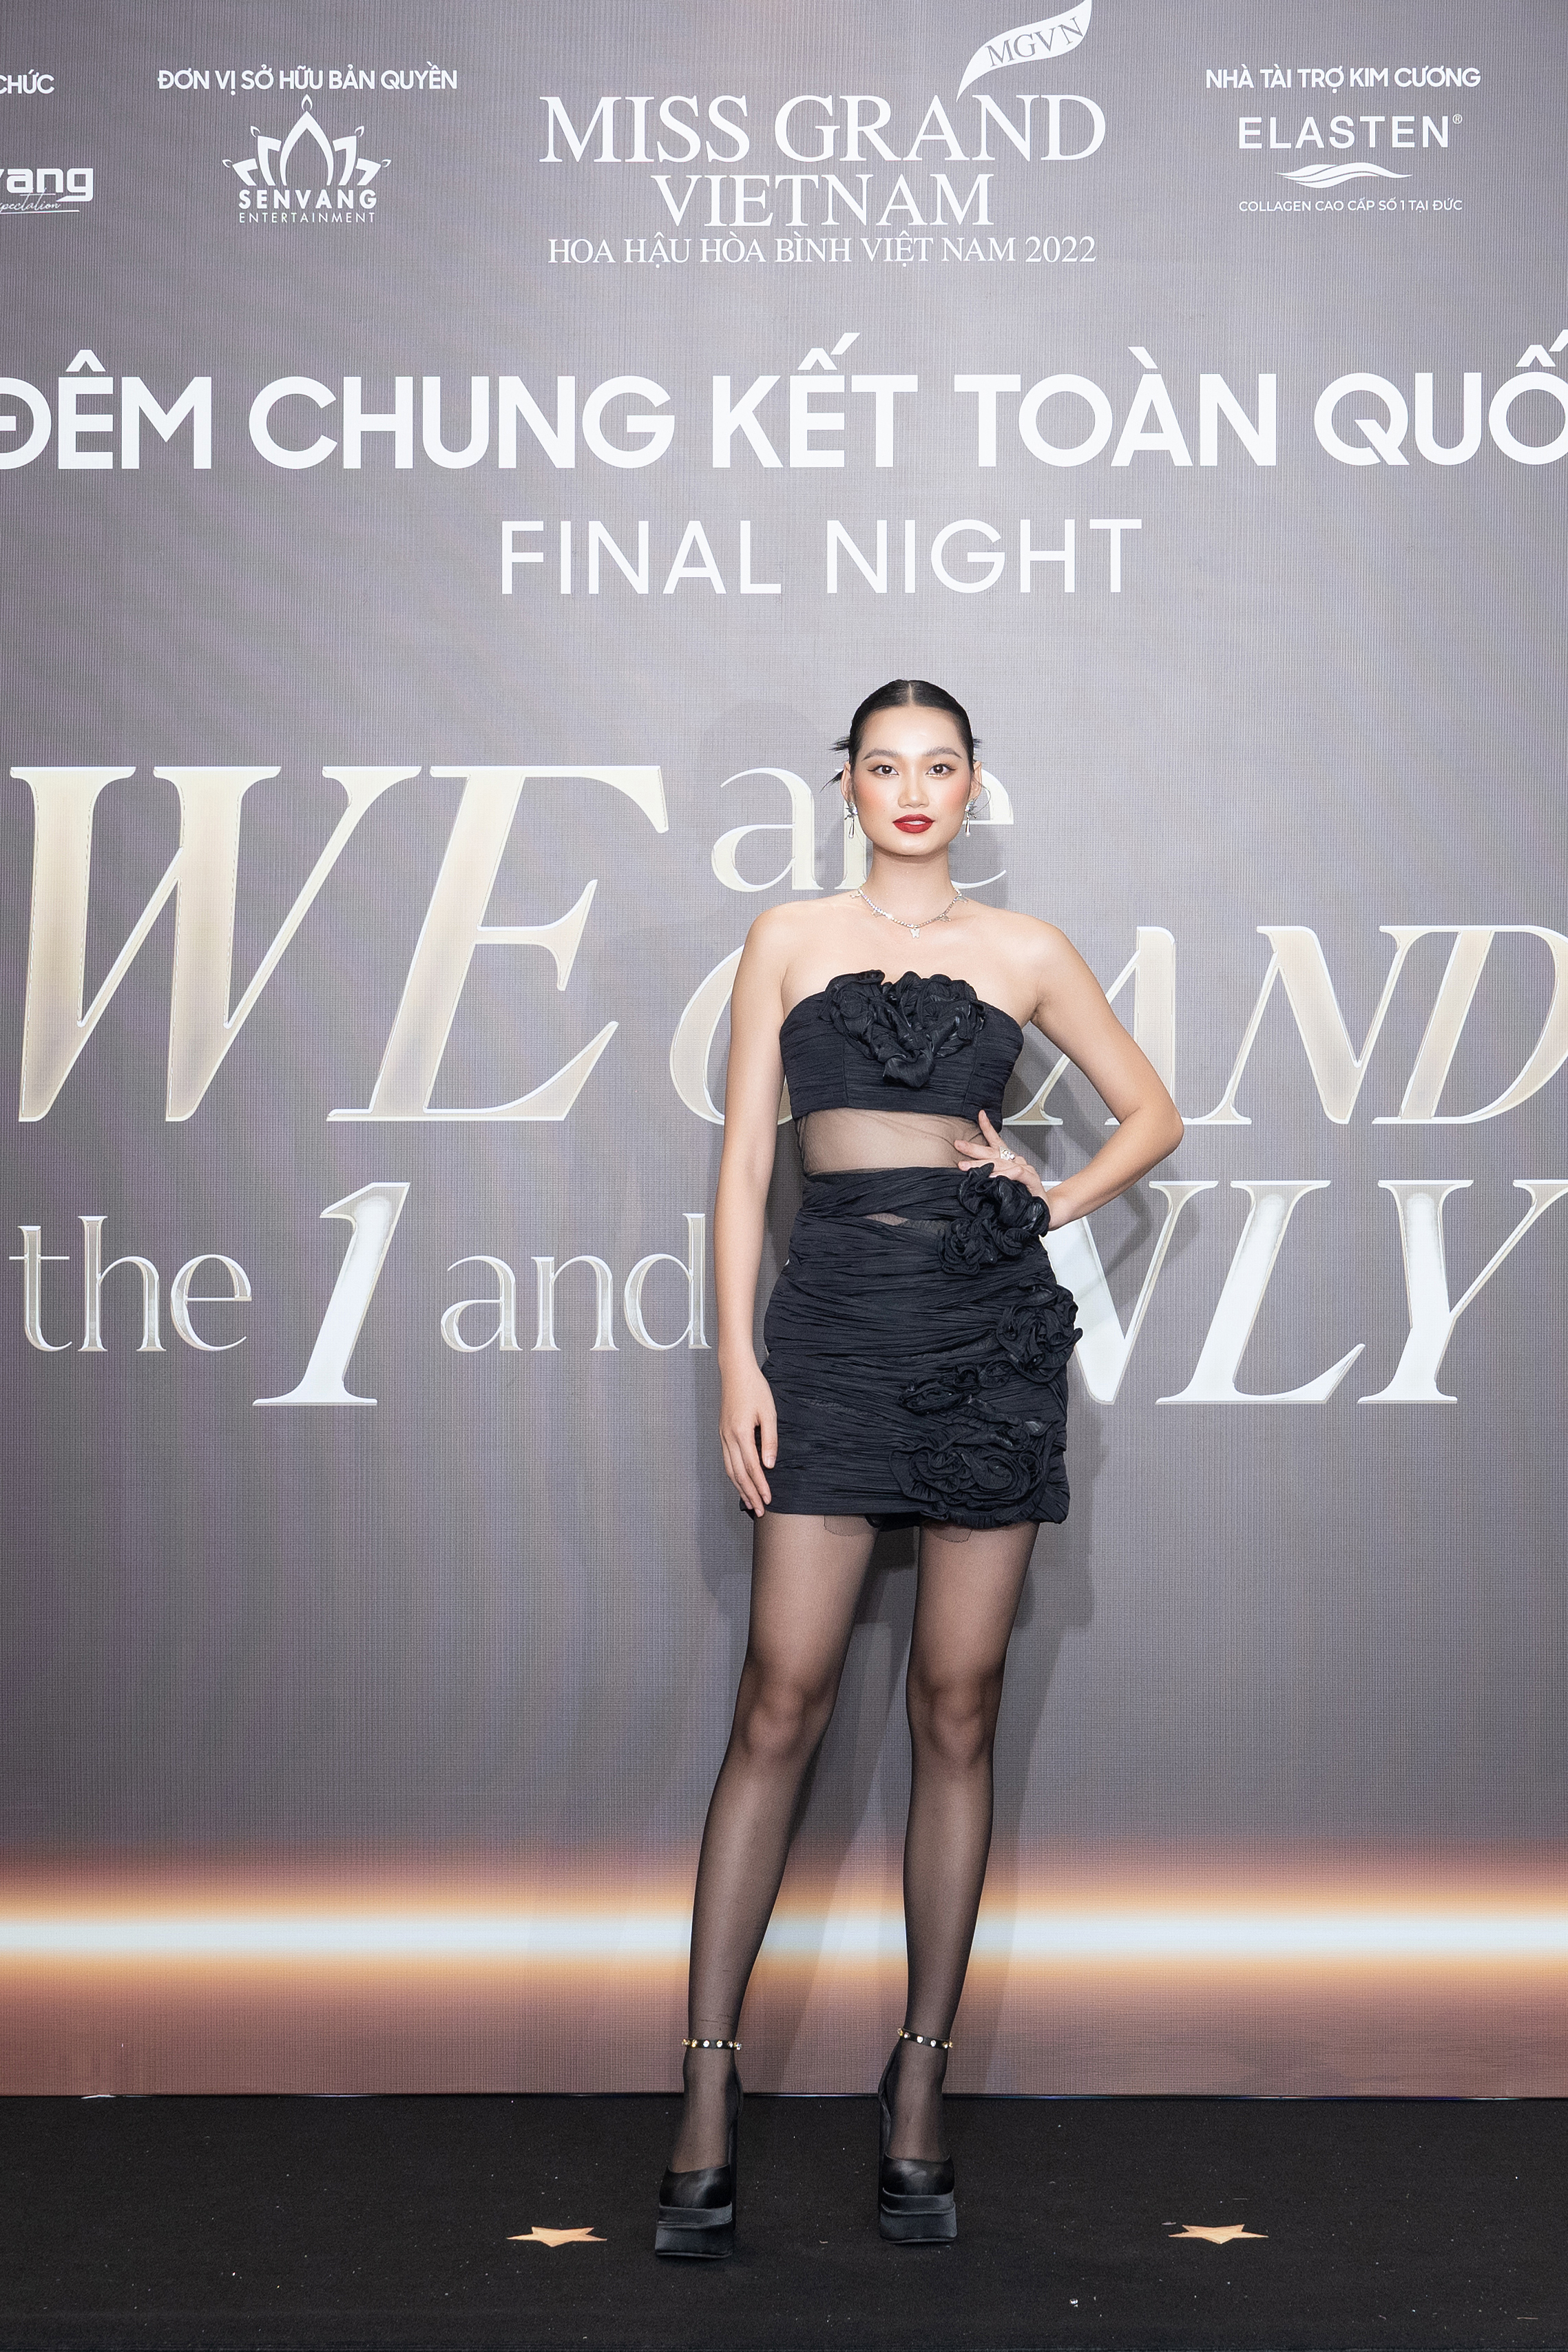 Thùy Tiên, Phương Nhi đội vương miện, rạng rỡ trên thảm đỏ chung kết Miss Grand Vietnam 2022-6